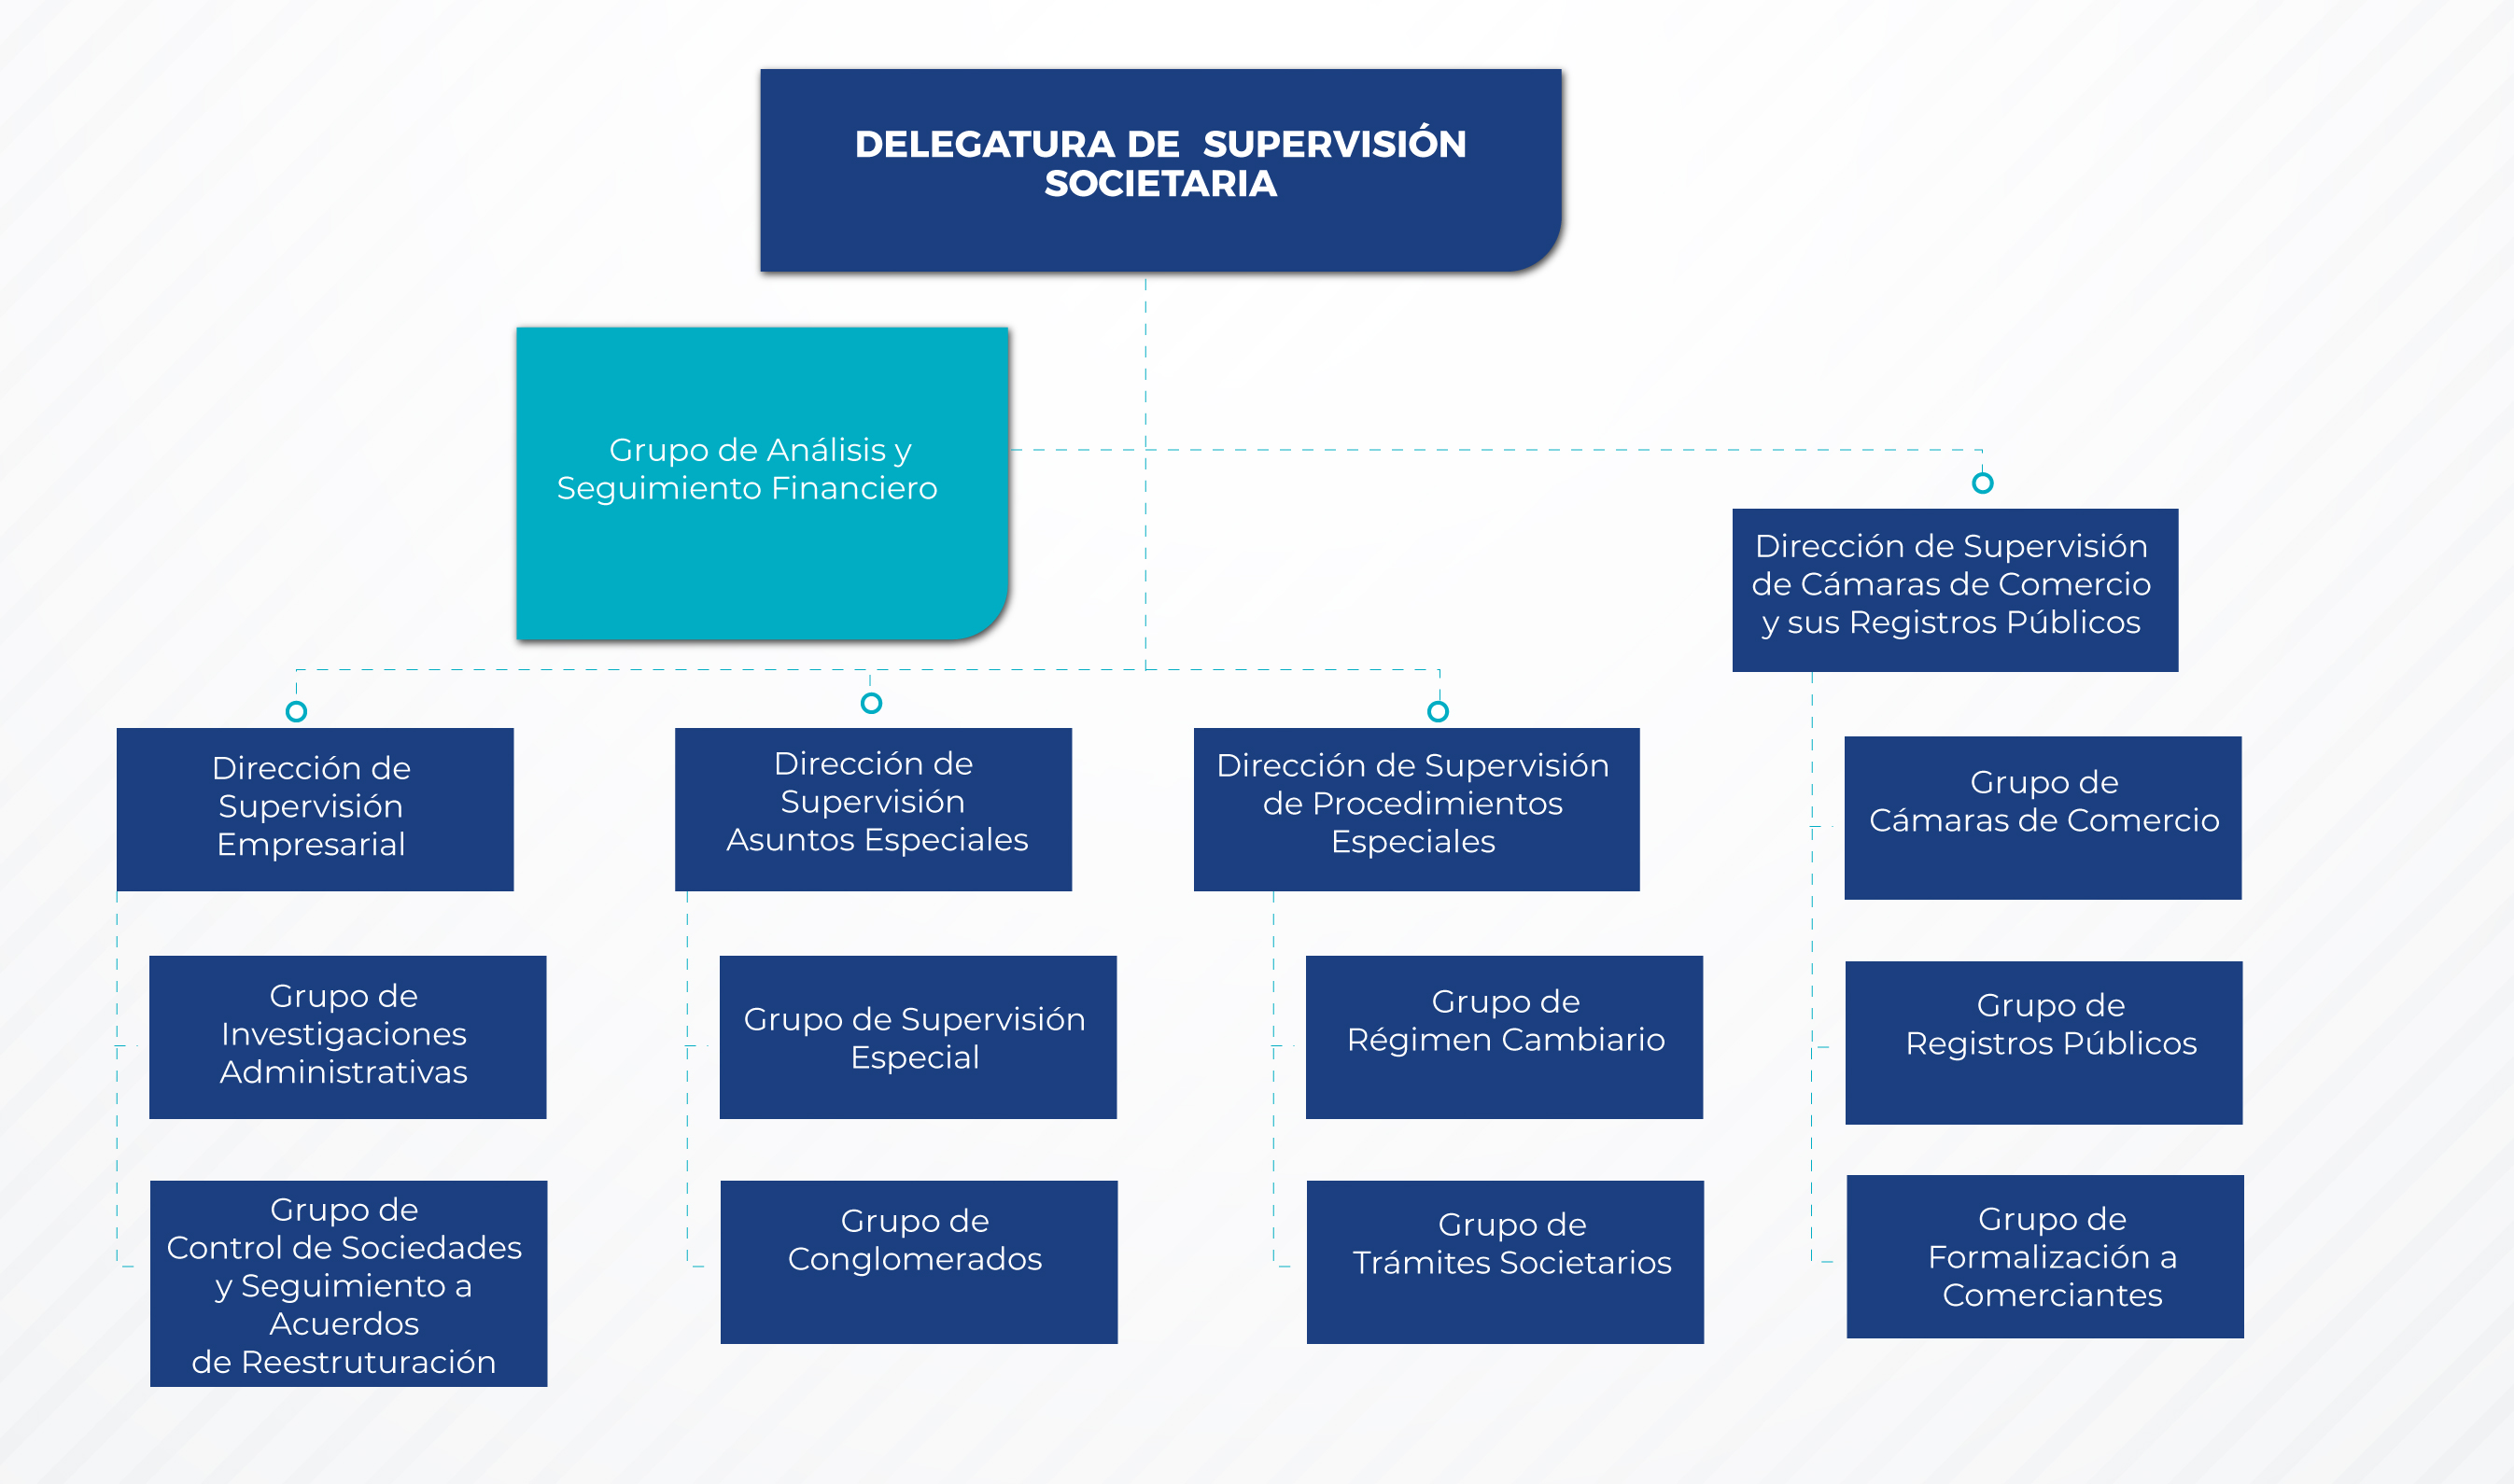 Estructura Delegatura de Supervisión Societaria